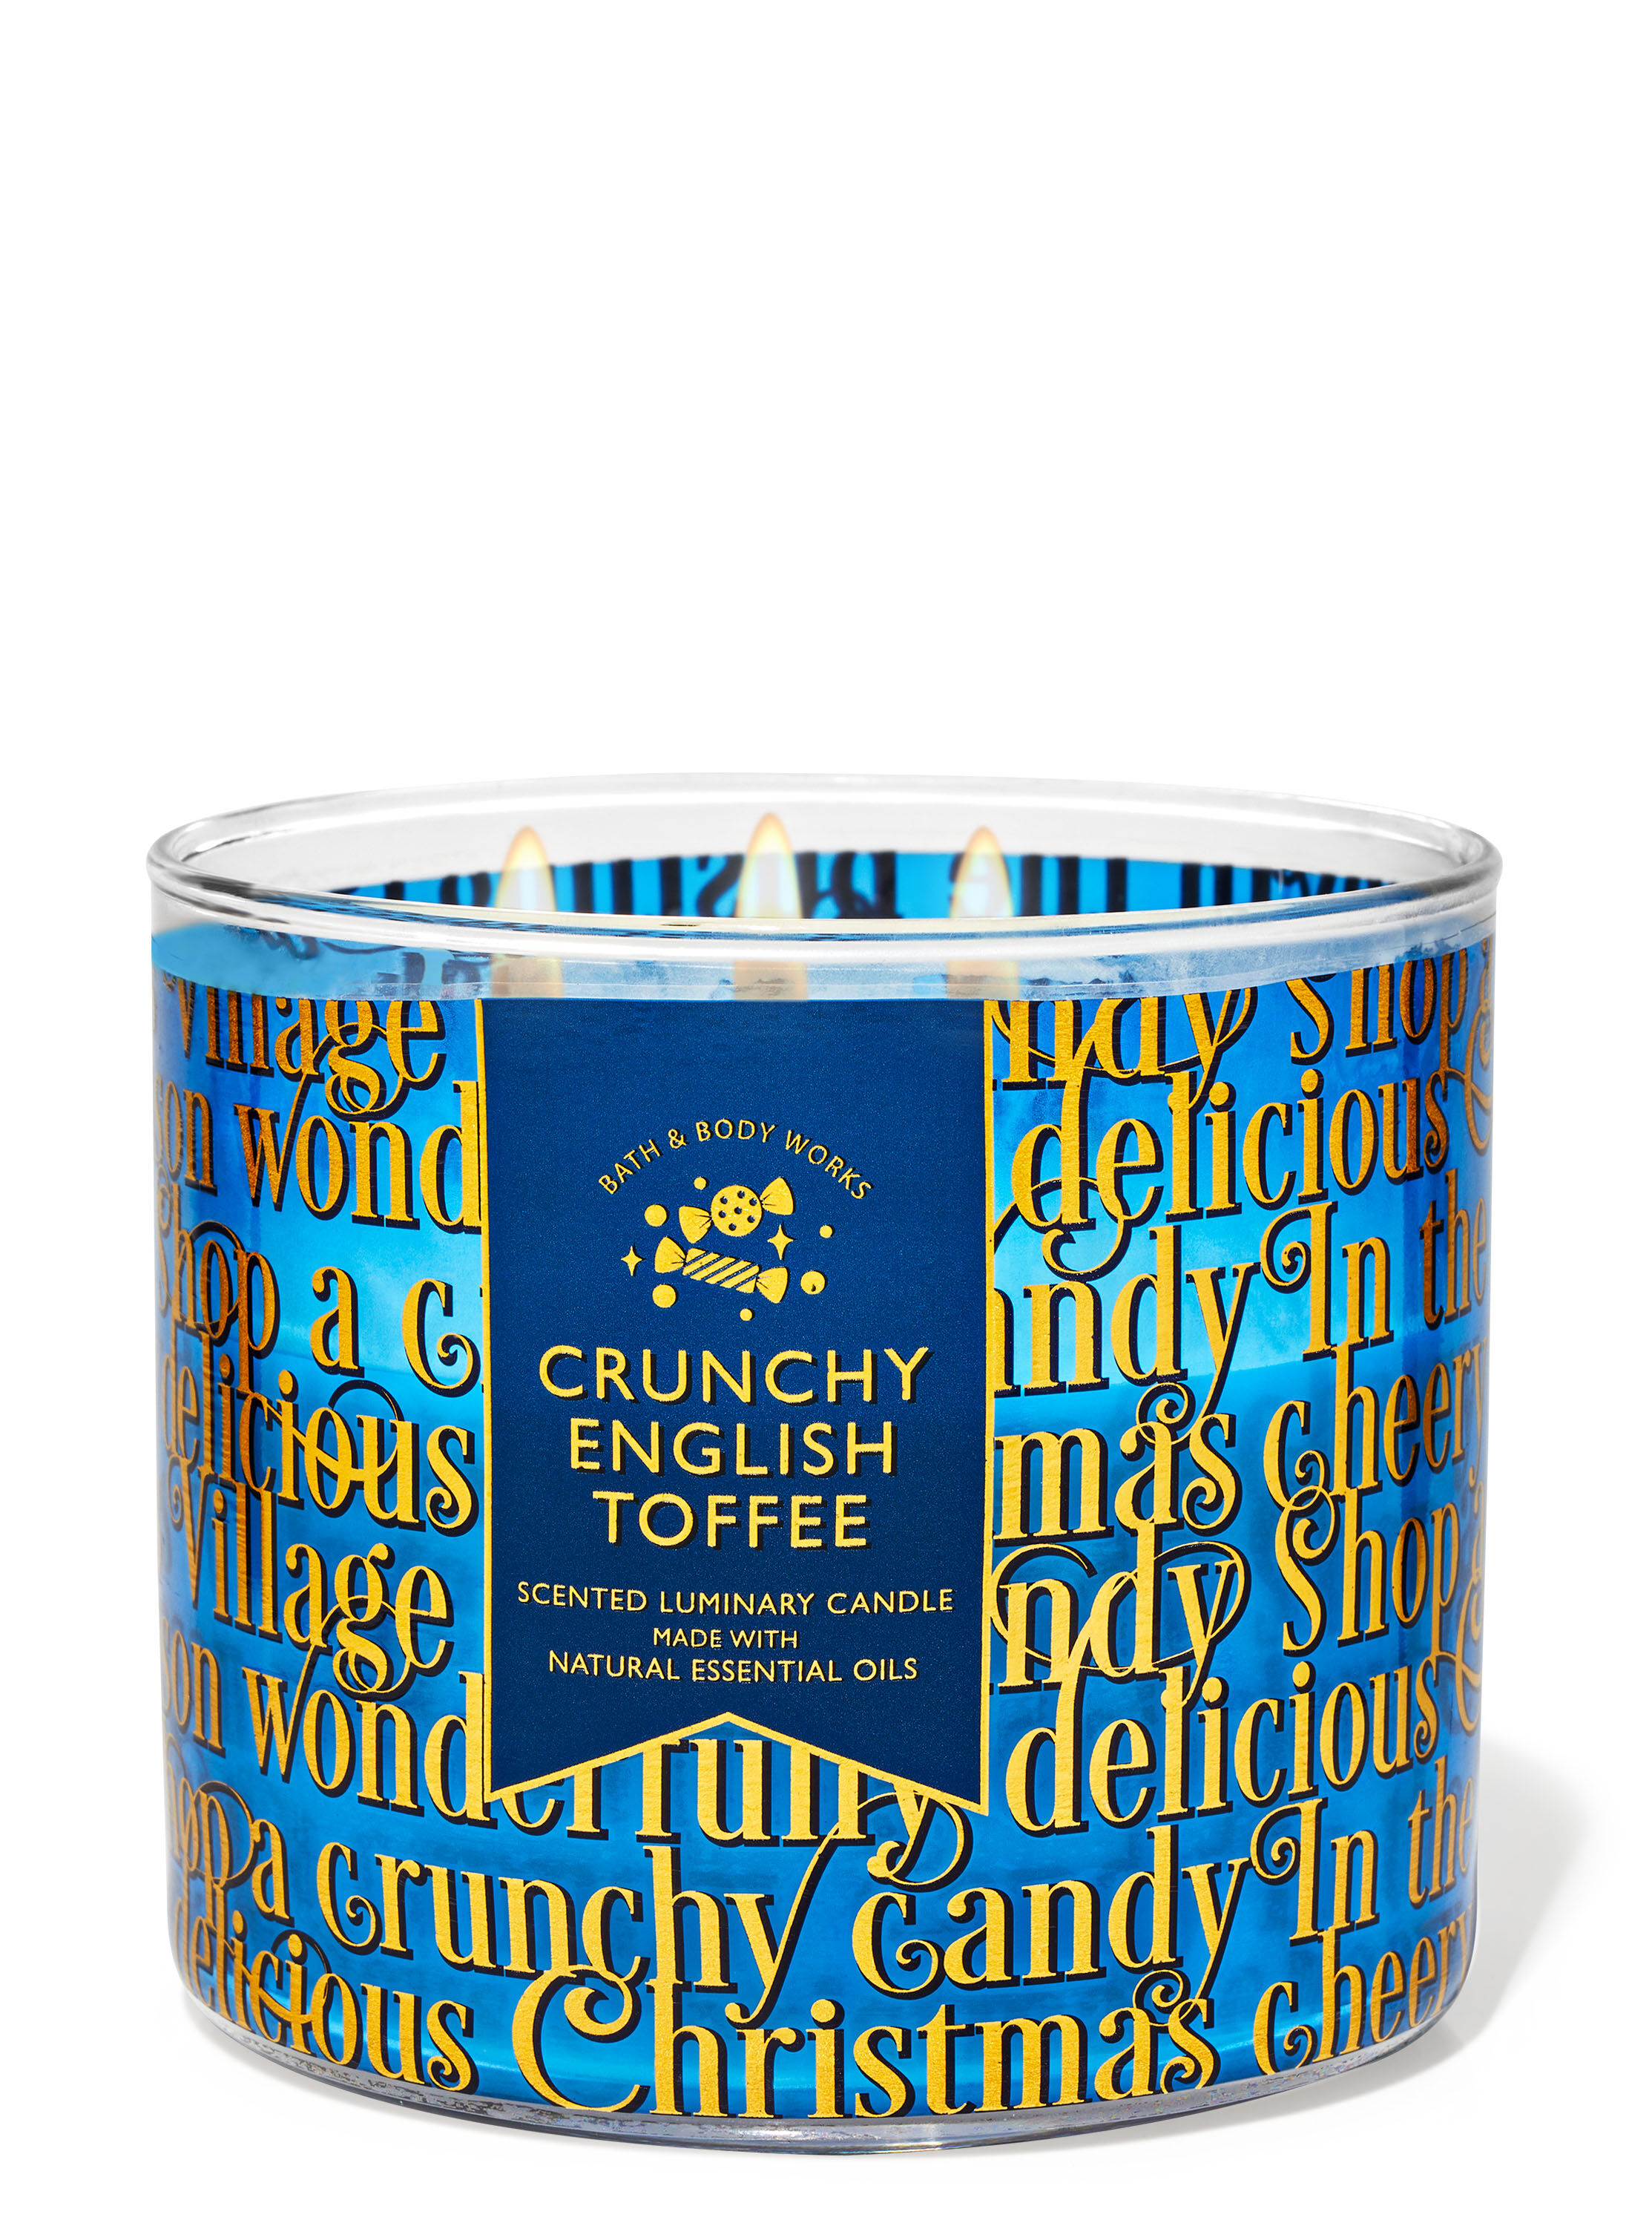 Crunchy English Toffee 3-Wick Candle | Bath & Body Works